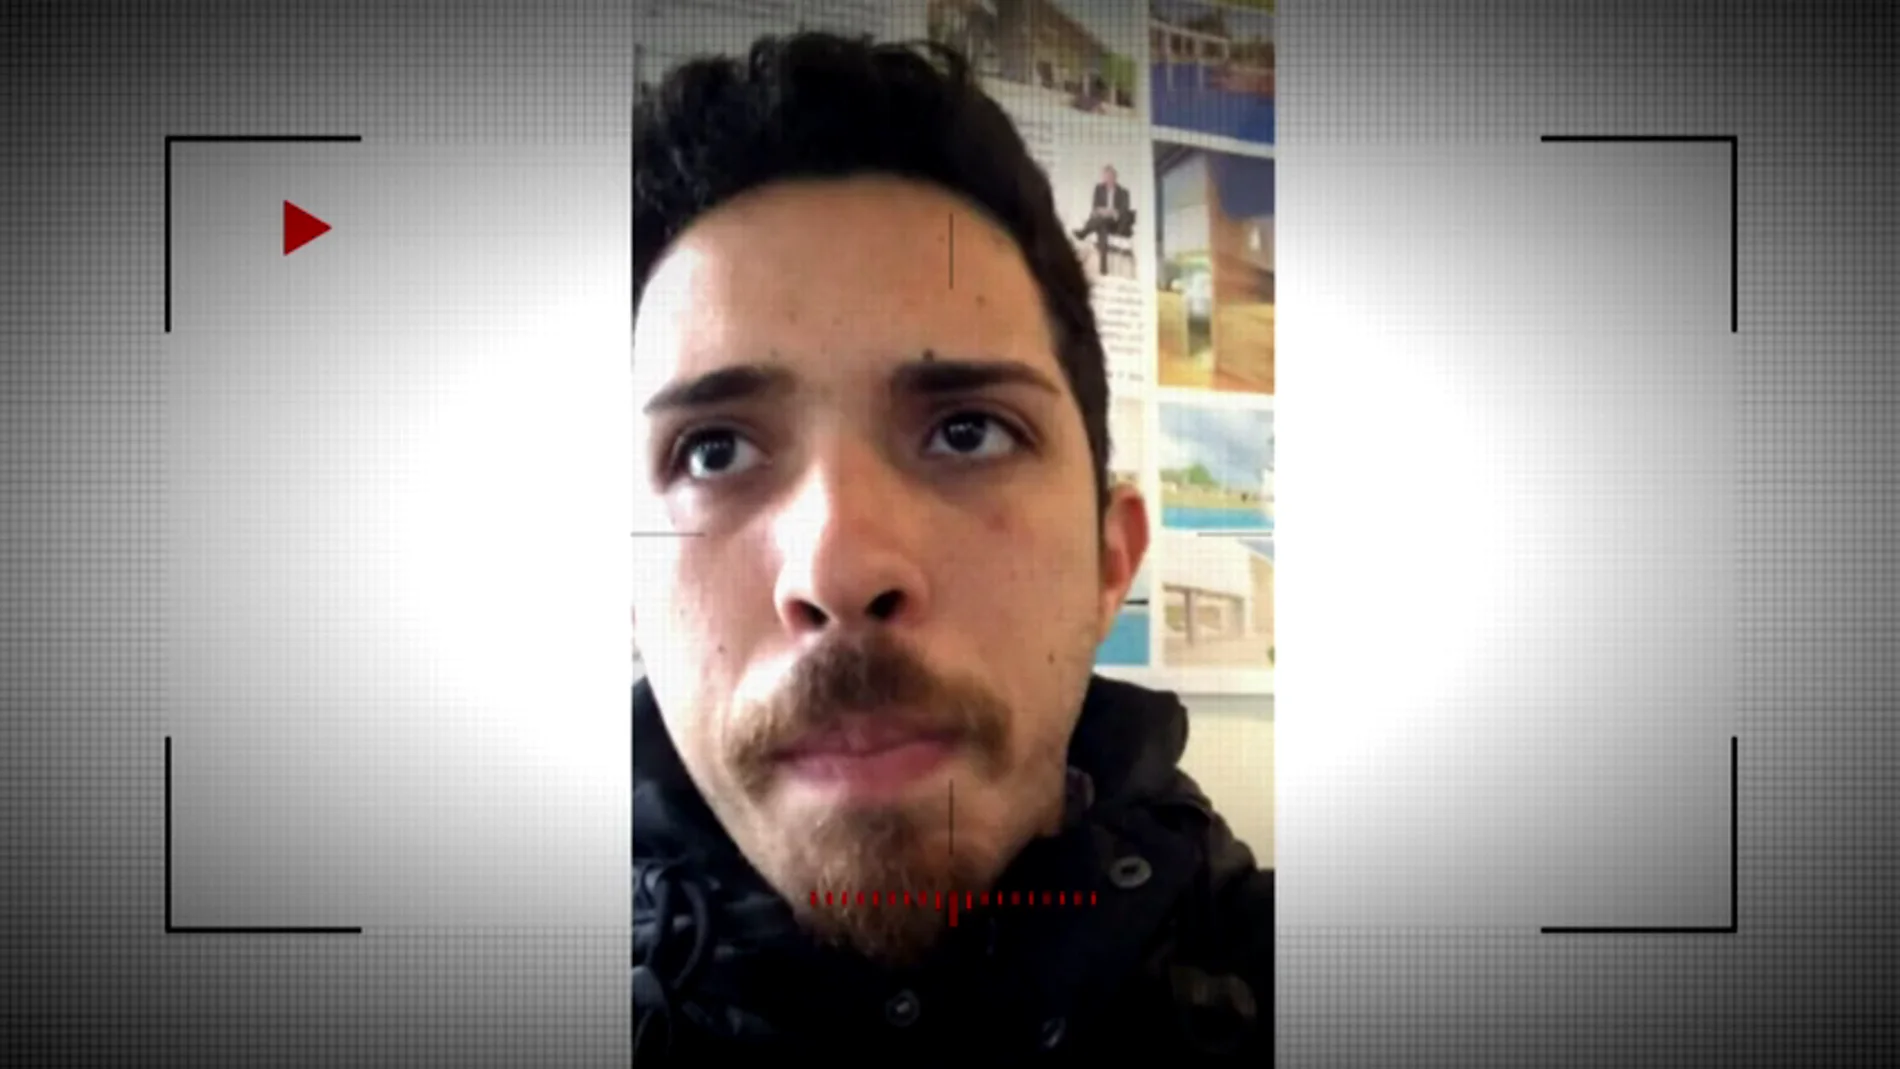  Víctor Pérez, amigo de Najuzaith, el joven de Puerto Rico brutalmente asesinado en Madrid: "Esto pudo haber sido un crimen de odio"